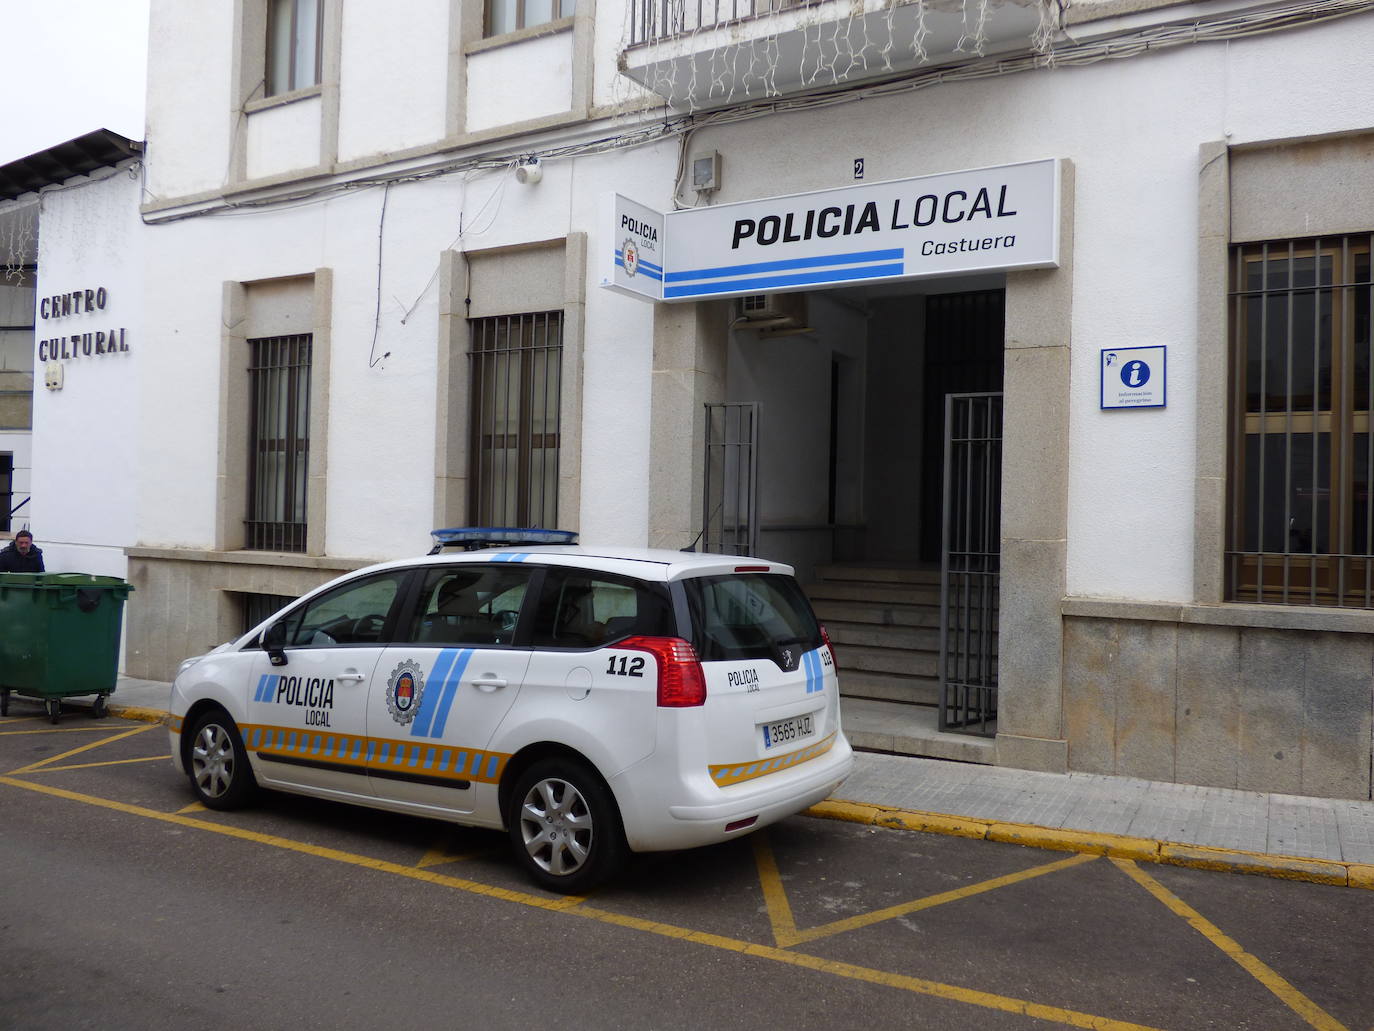 La Policía Local de Castuera contará por primera vez con una mujer en su plantilla